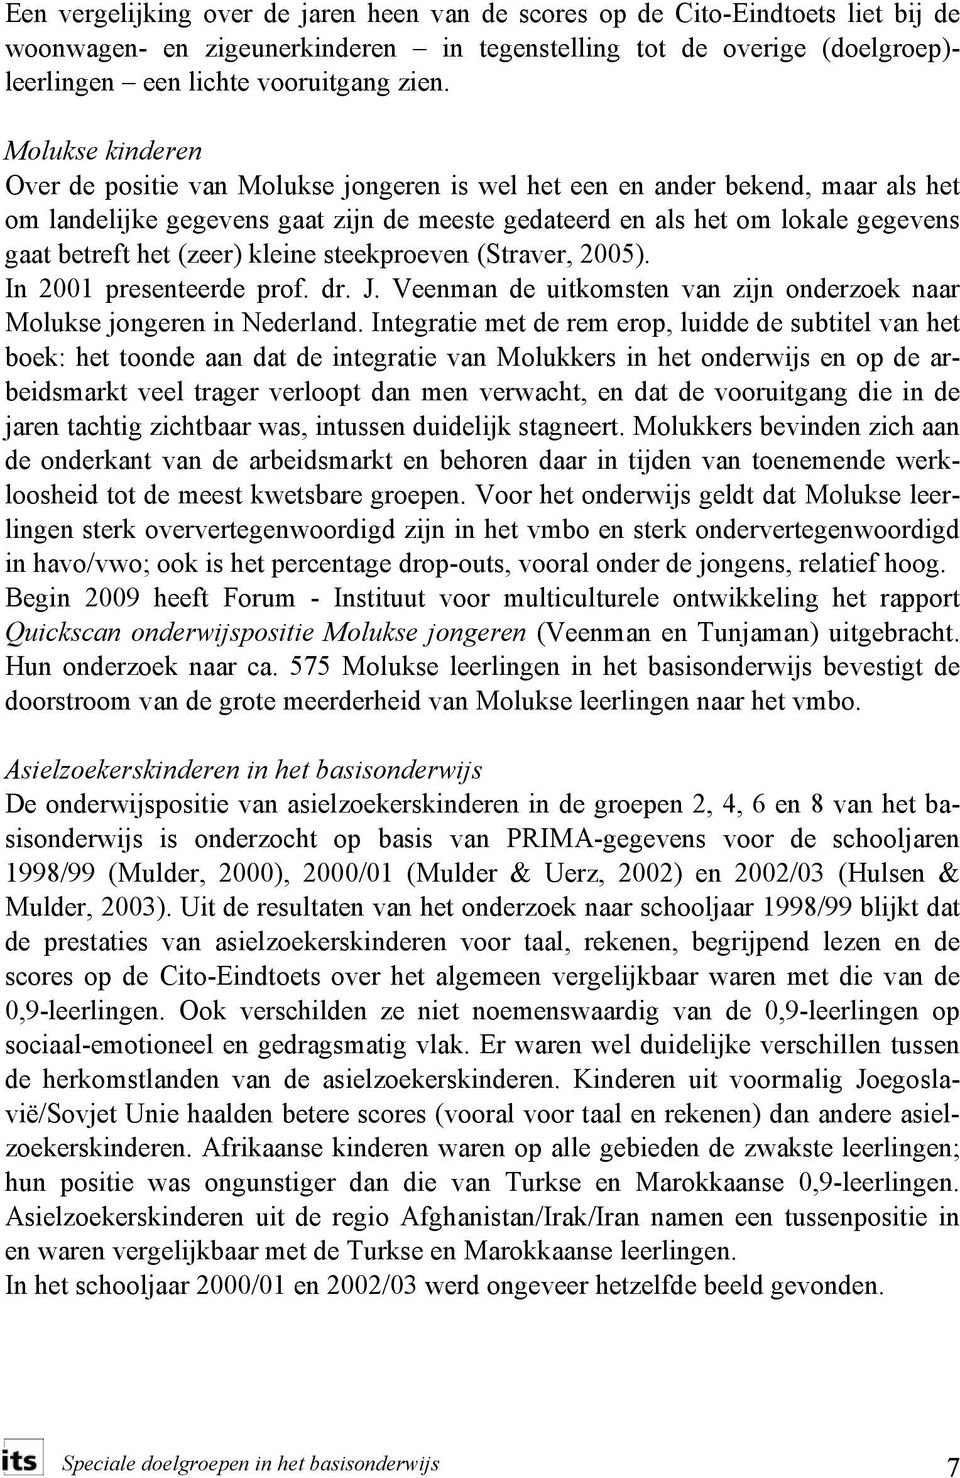 (zeer) kleine steekproeven (Straver, 2005). In 2001 presenteerde prof. dr. J. Veenman de uitkomsten van zijn onderzoek naar Molukse jongeren in Nederland.